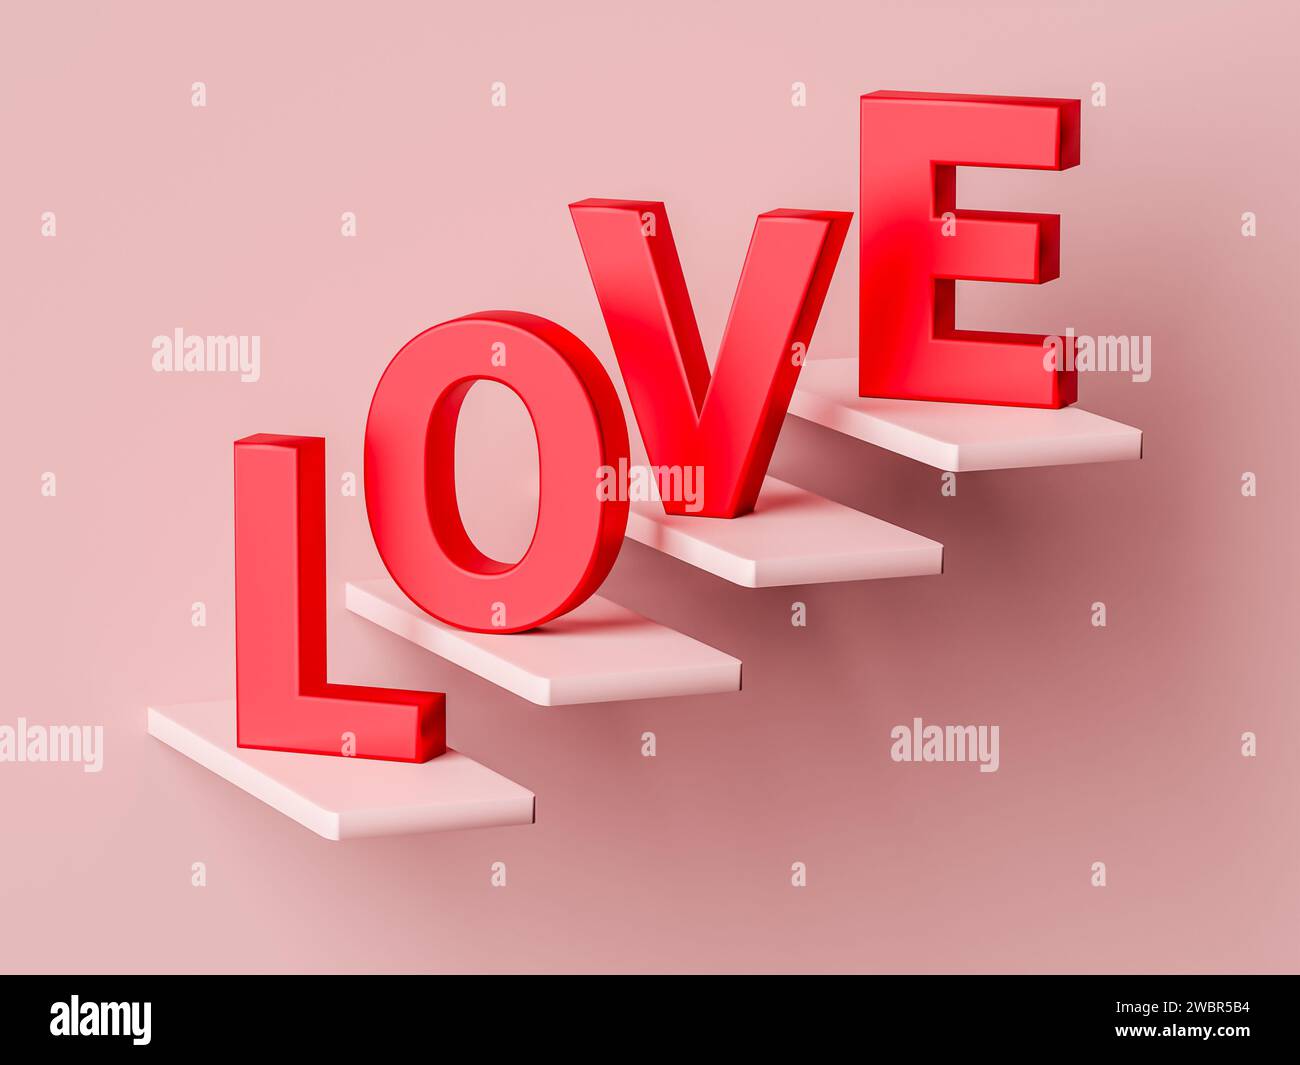 Sali le scale dell'amore con questa accattivante illustrazione con la parola "AMORE". Un tocco romantico e artistico per san valentino, matrimonio o romano Foto Stock